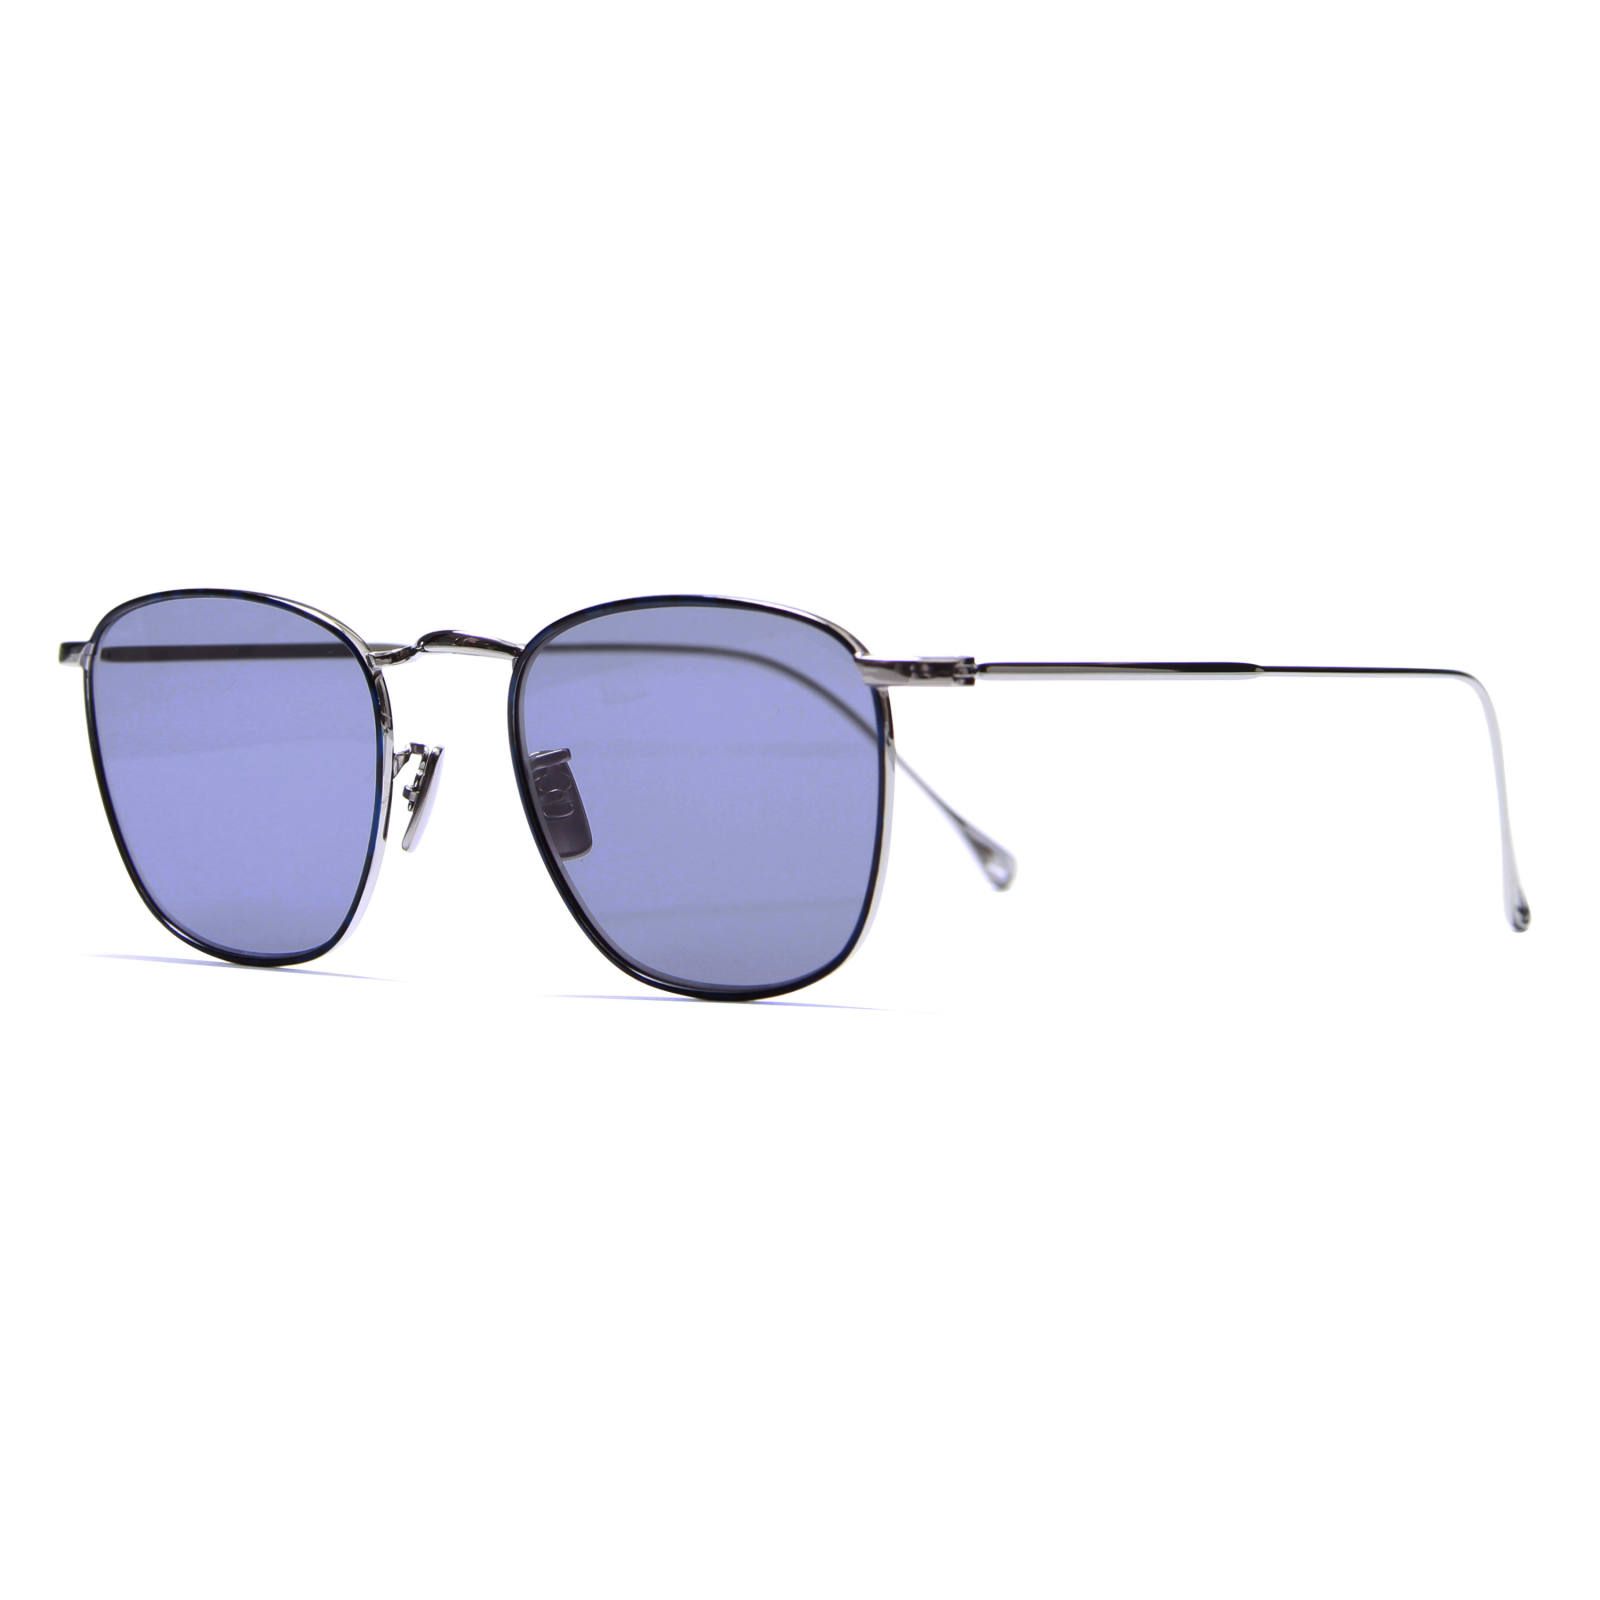 Sara/Silver/Blue (Sunglasses) - 47□19-145